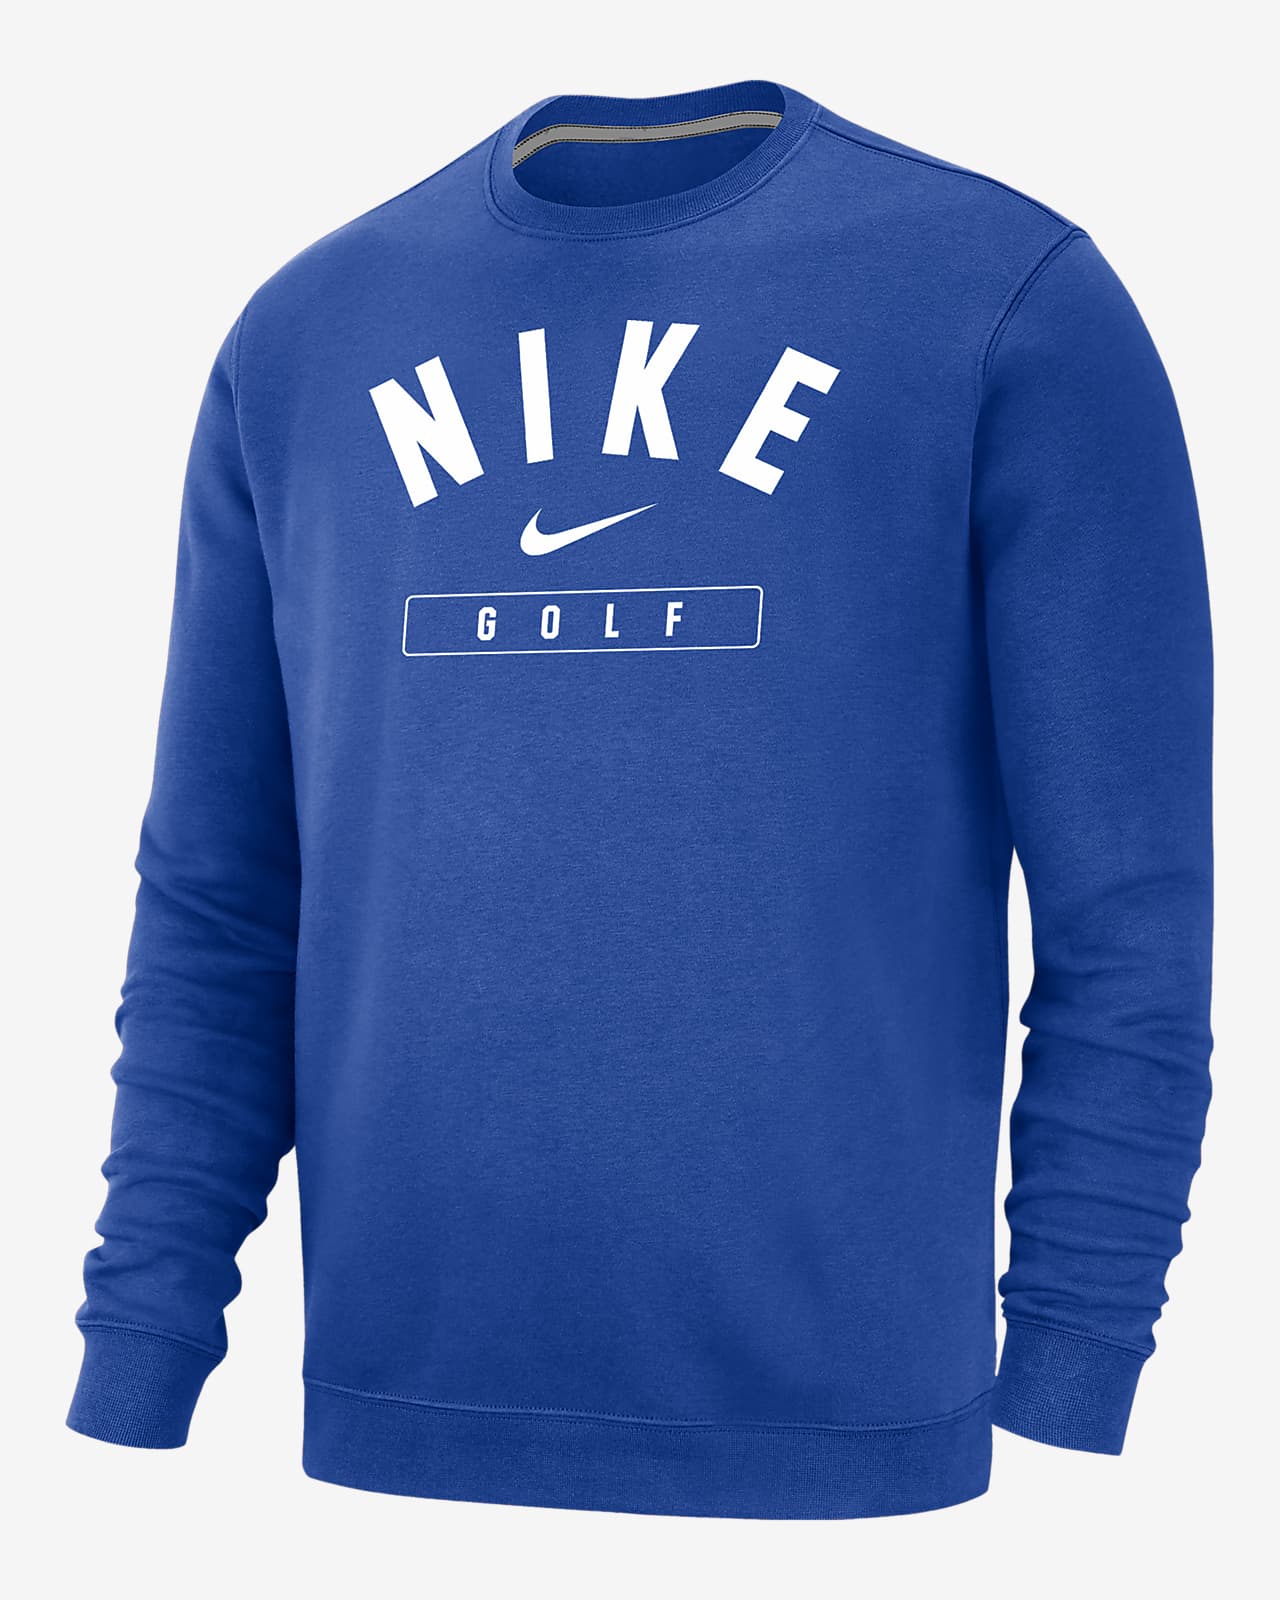 Nike Golf Men's Crew-Neck Sweatshirt